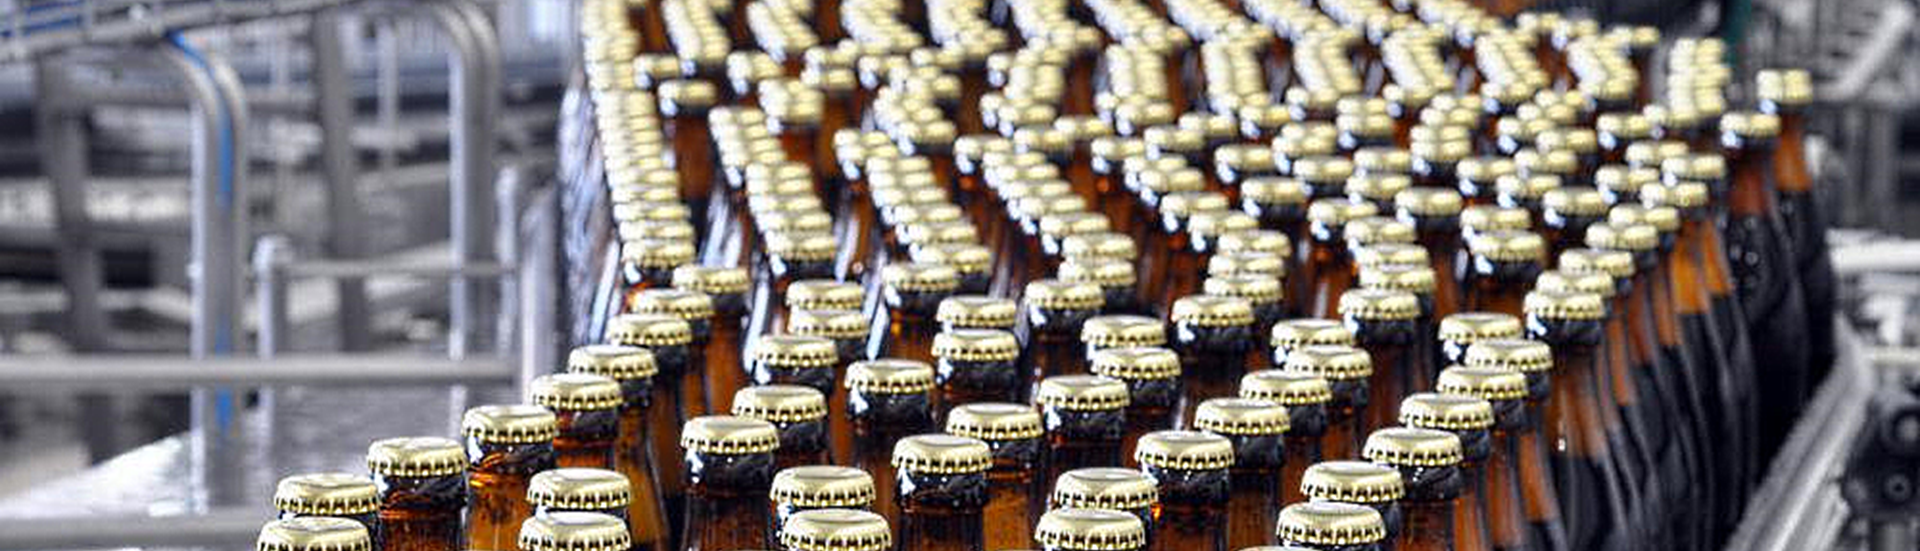 Topbillede af ølflasker på transportbånd i produktionen